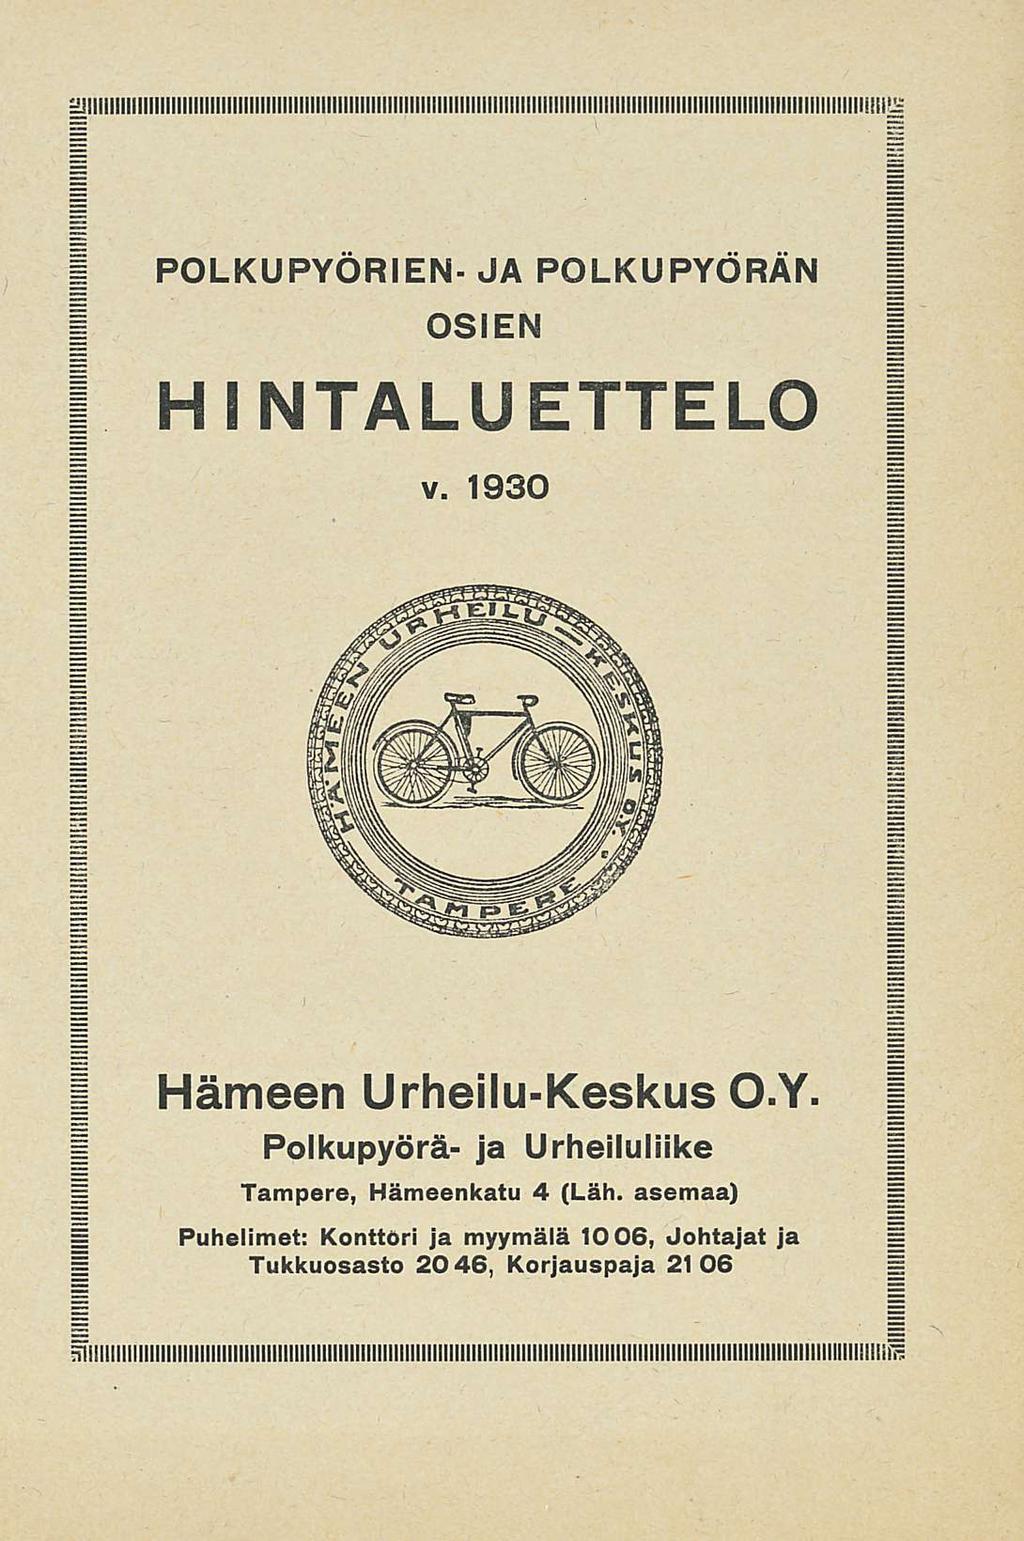 POLKUPYÖRIEN JA POLKUPYÖRÄN OSIEN HINTALUETTELO v. 1930 Hämeen UrheiluKeskus O.Y. Polkupyörä ja Urheiluliike Tampere Hämeenkatu 4 (Läh.